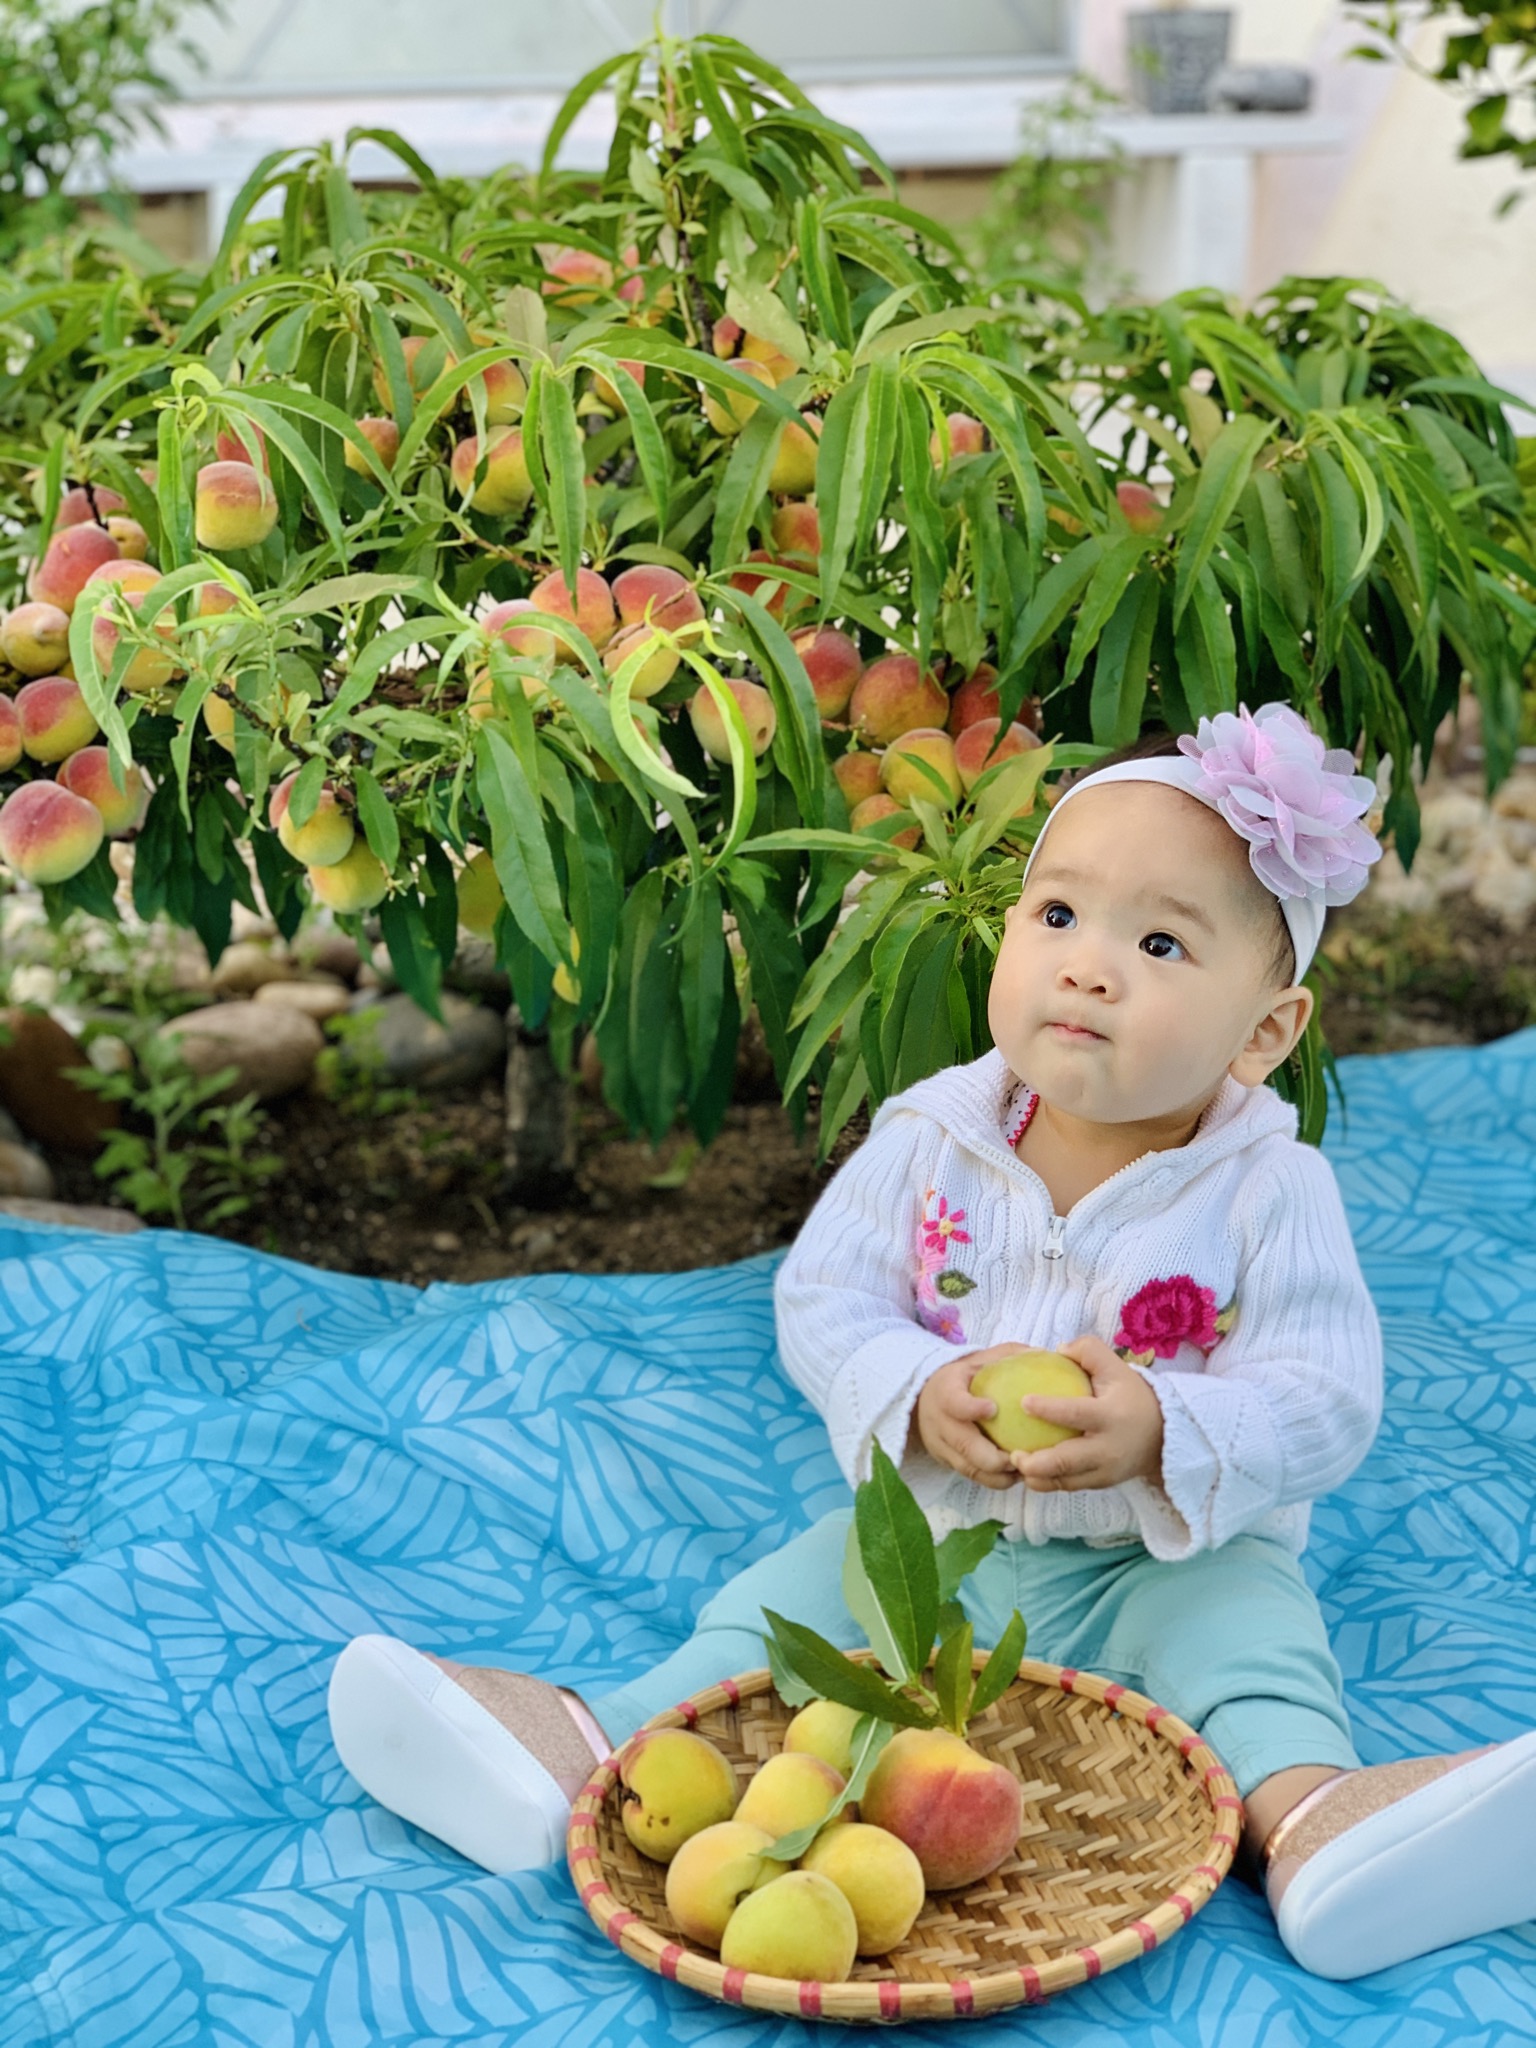 Vợ đảm ở Mỹ khoe vườn 450m2 ngập tràn hoa trái giống Việt, tiết lộ bí quyết vàng để cây đạt năng suất, quả trĩu trịt quanh năm - Ảnh 23.